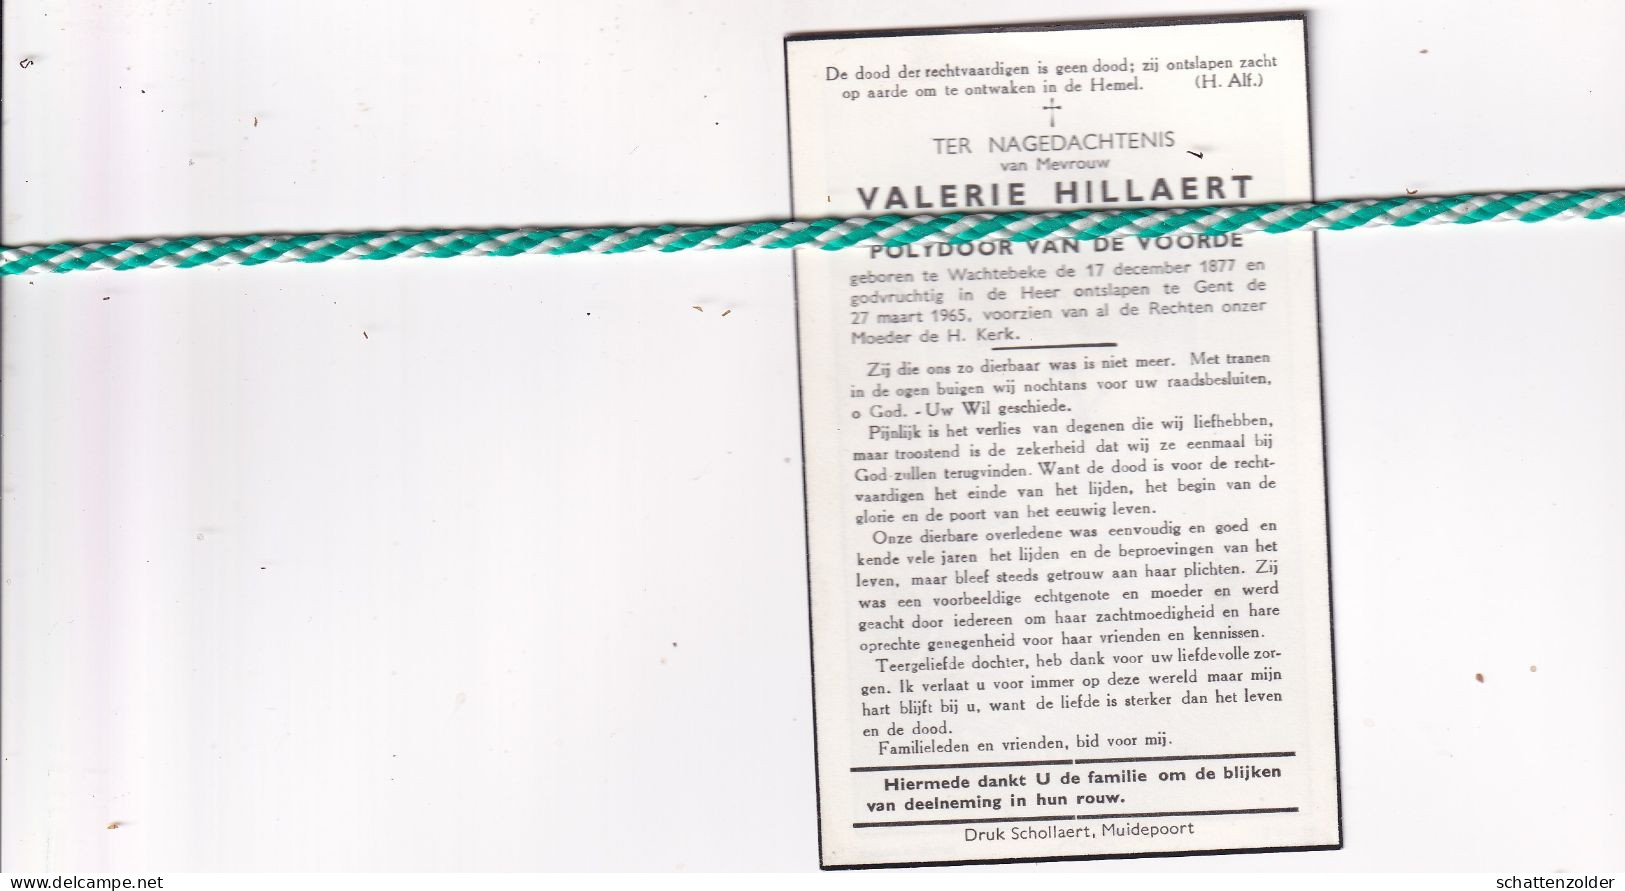 Valerie Hillaert-Van De Voorde, Wachtebeke 1877, Gent 1965 - Obituary Notices